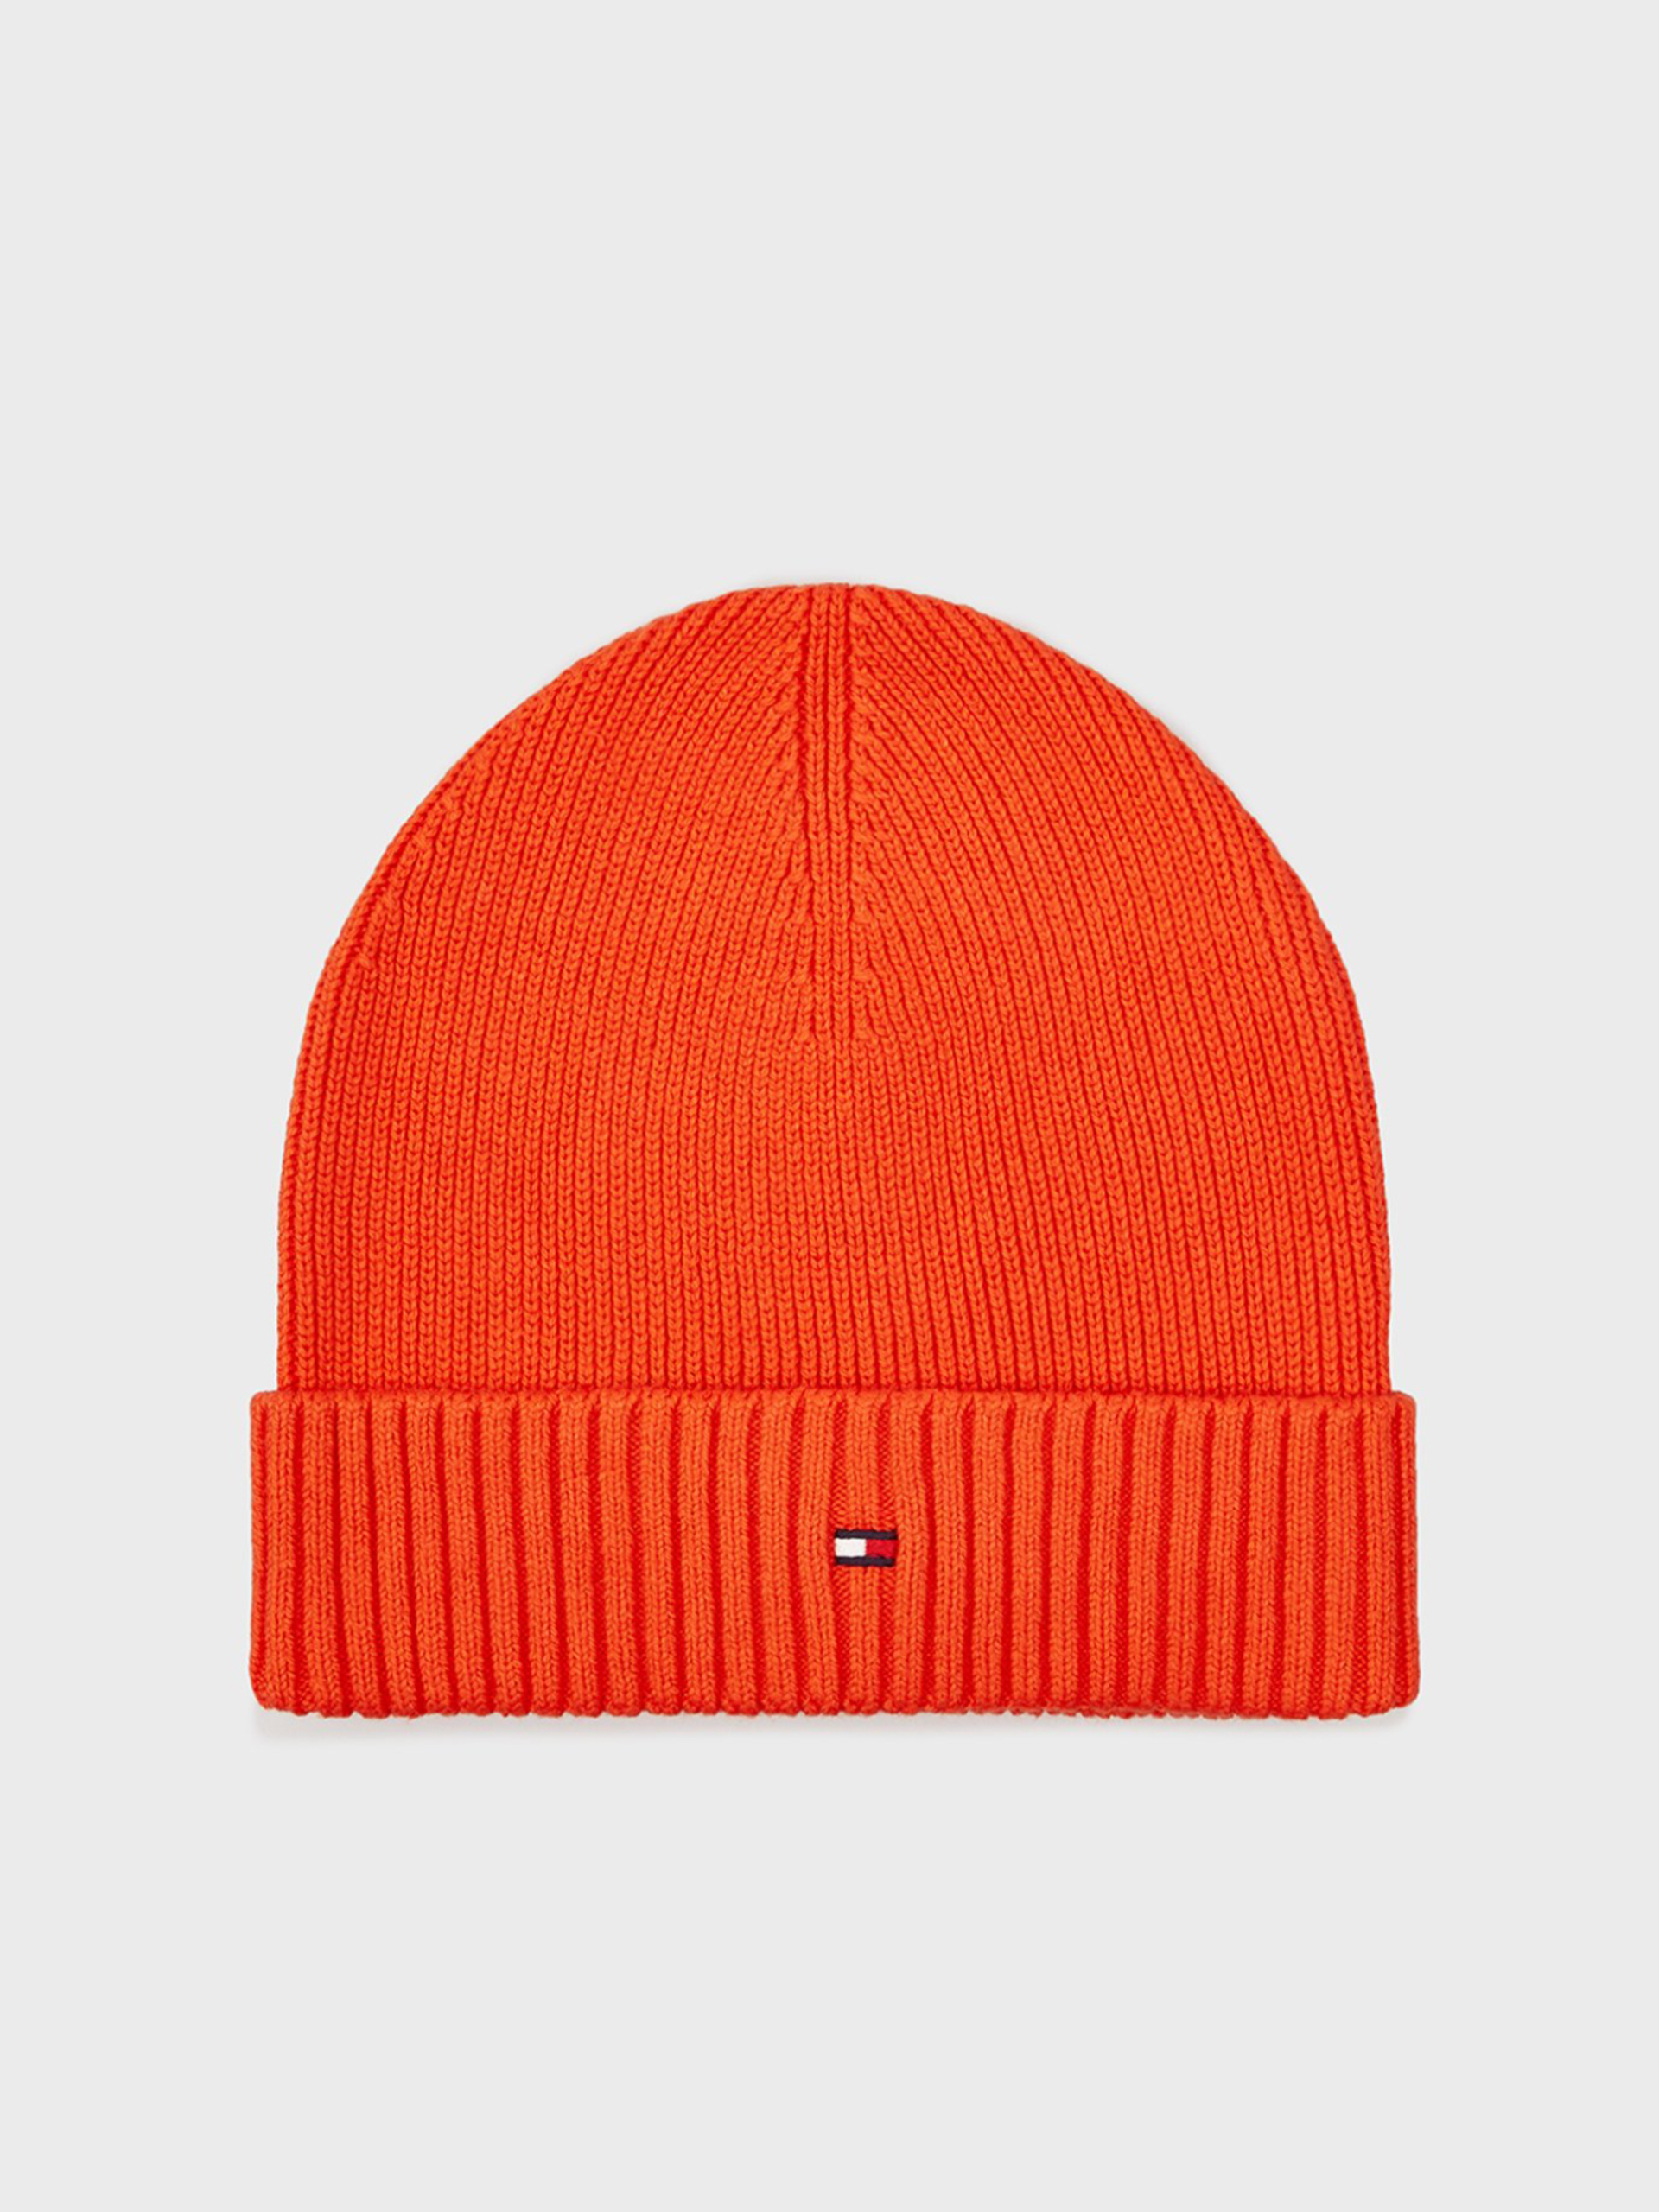 Tommy Hilfiger pánská oranžová čepice